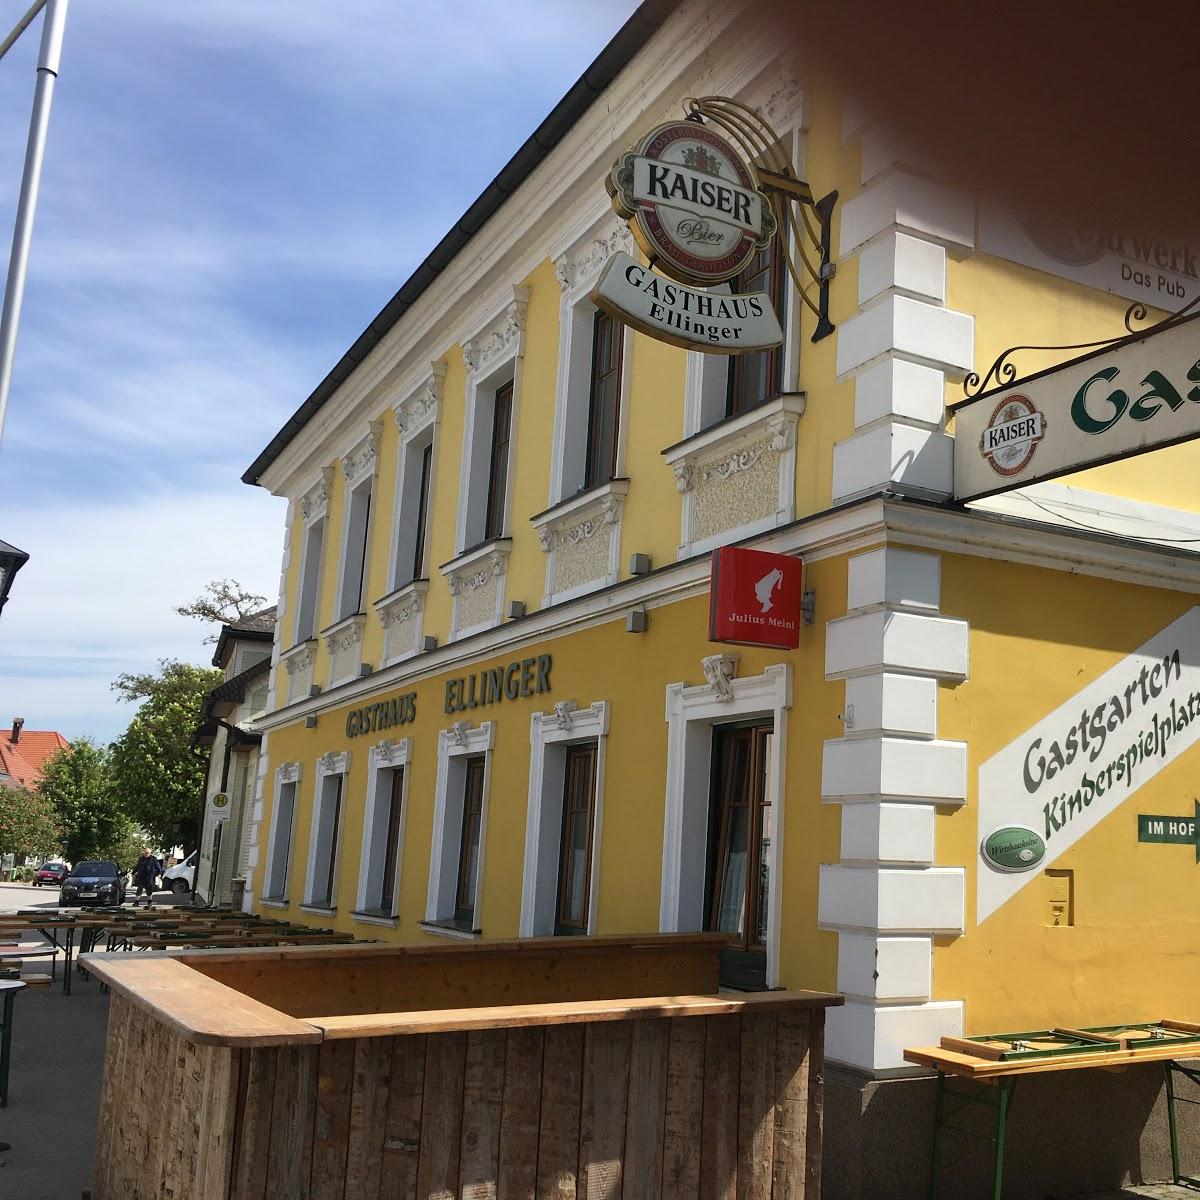 Restaurant "Gasthaus Ellinger" in Sankt Peter in der Au-Markt